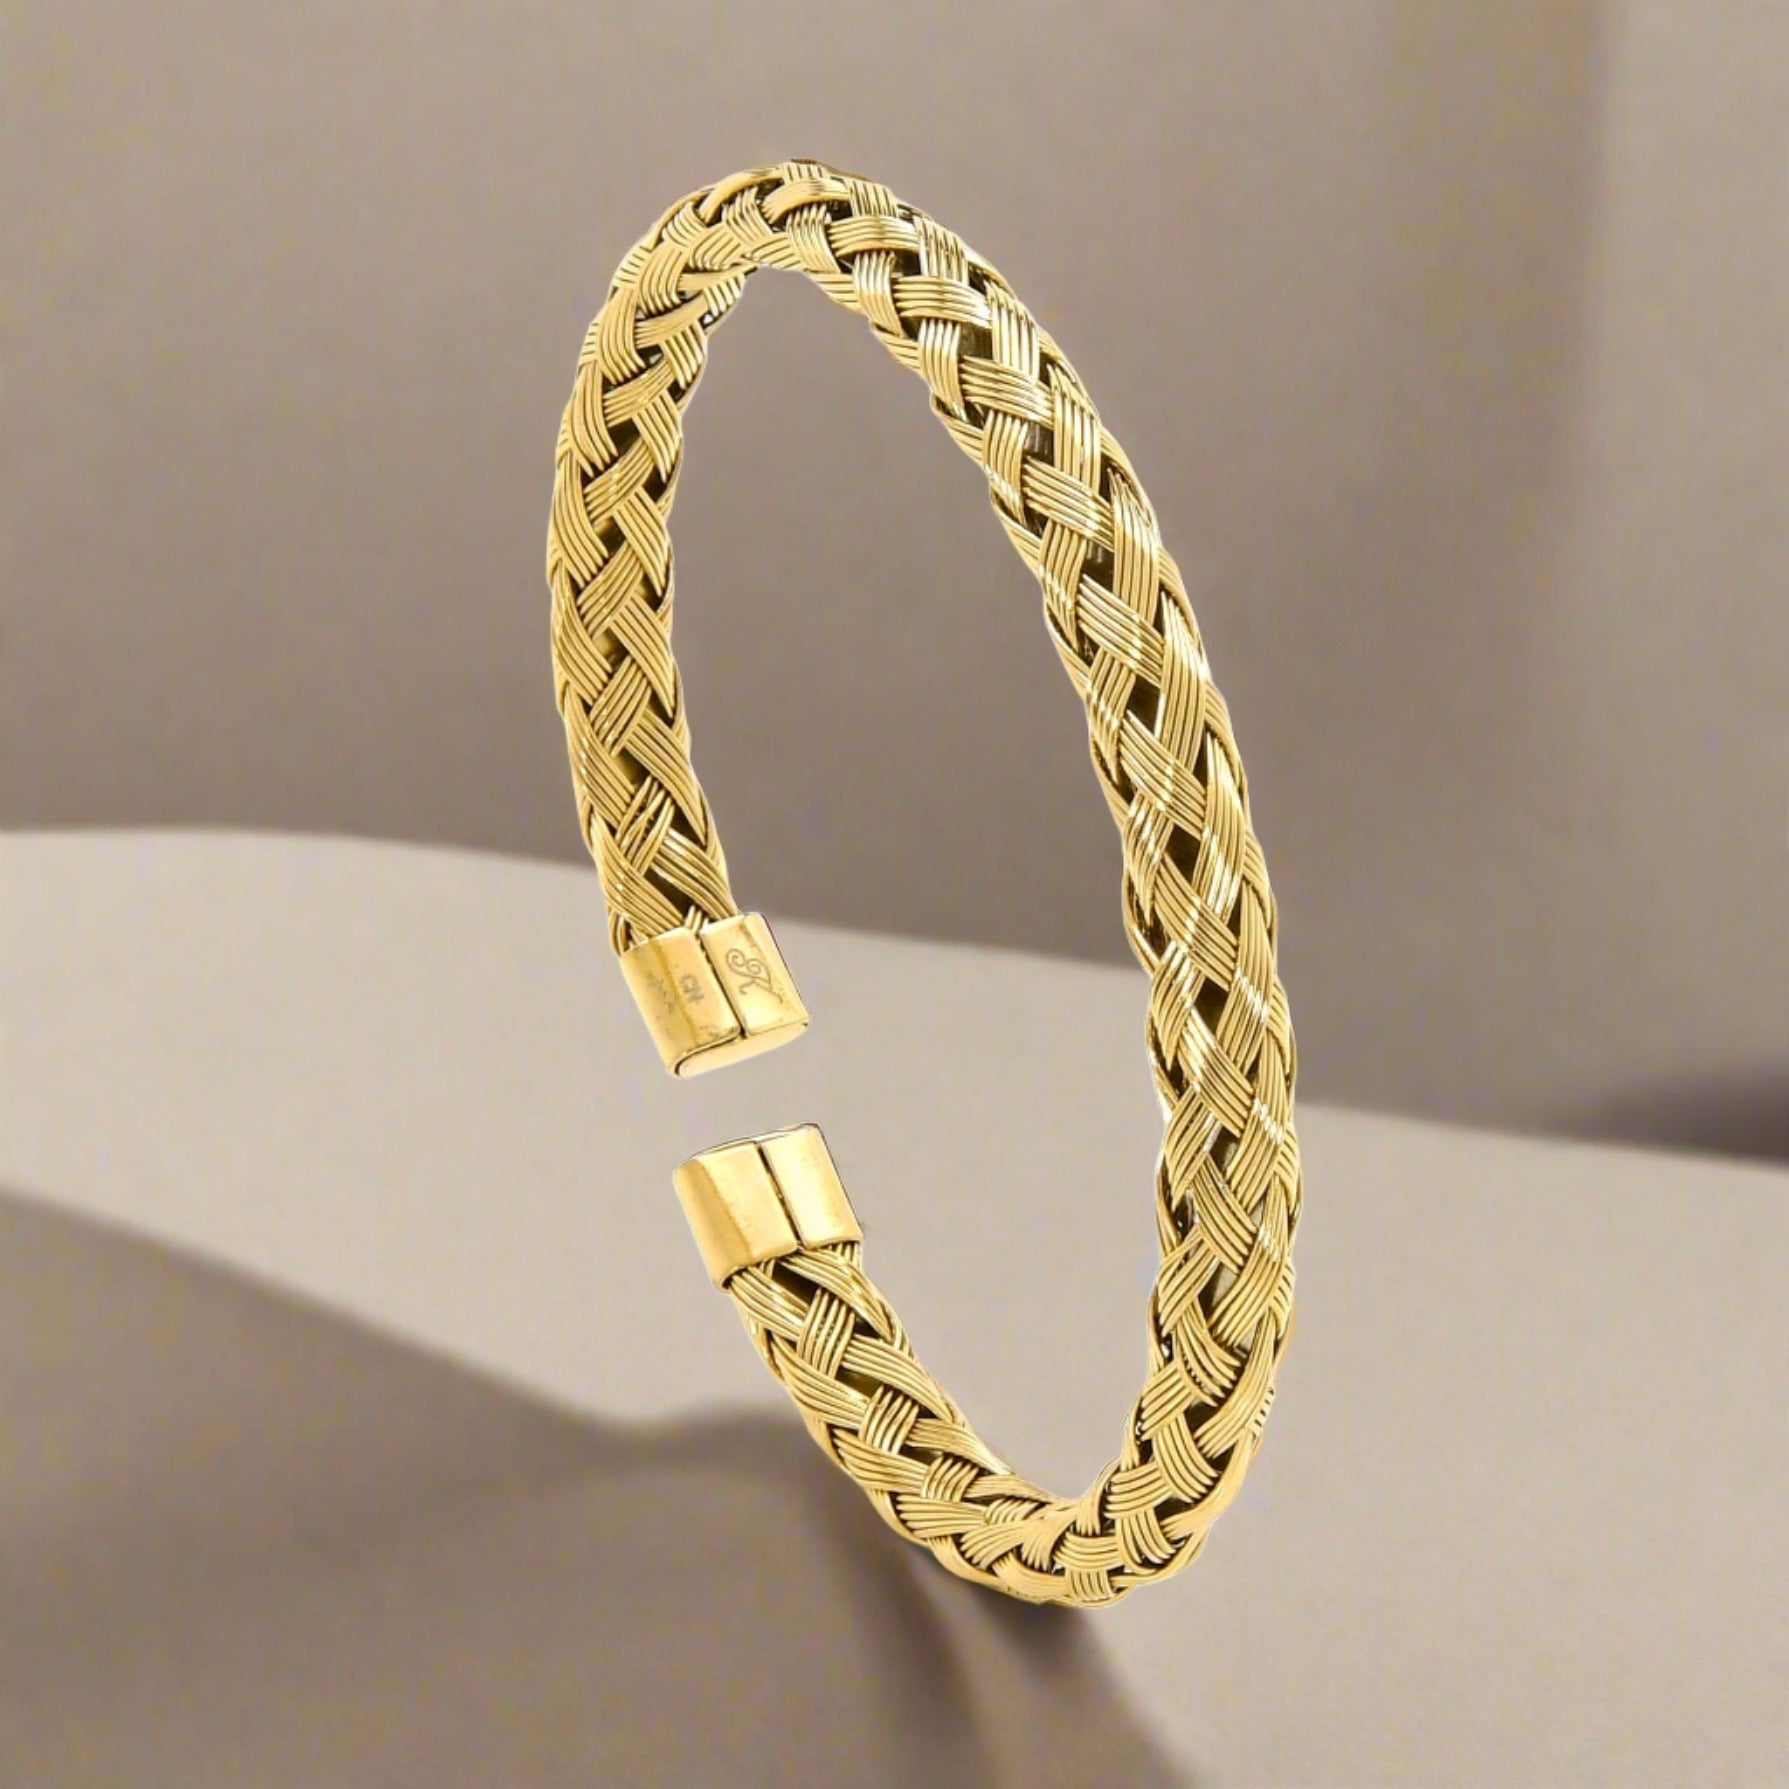 Kalifano Steel Hearts Jewelry Gold Basket Weave Braided Steel Hearts Bracelet SHB143-G